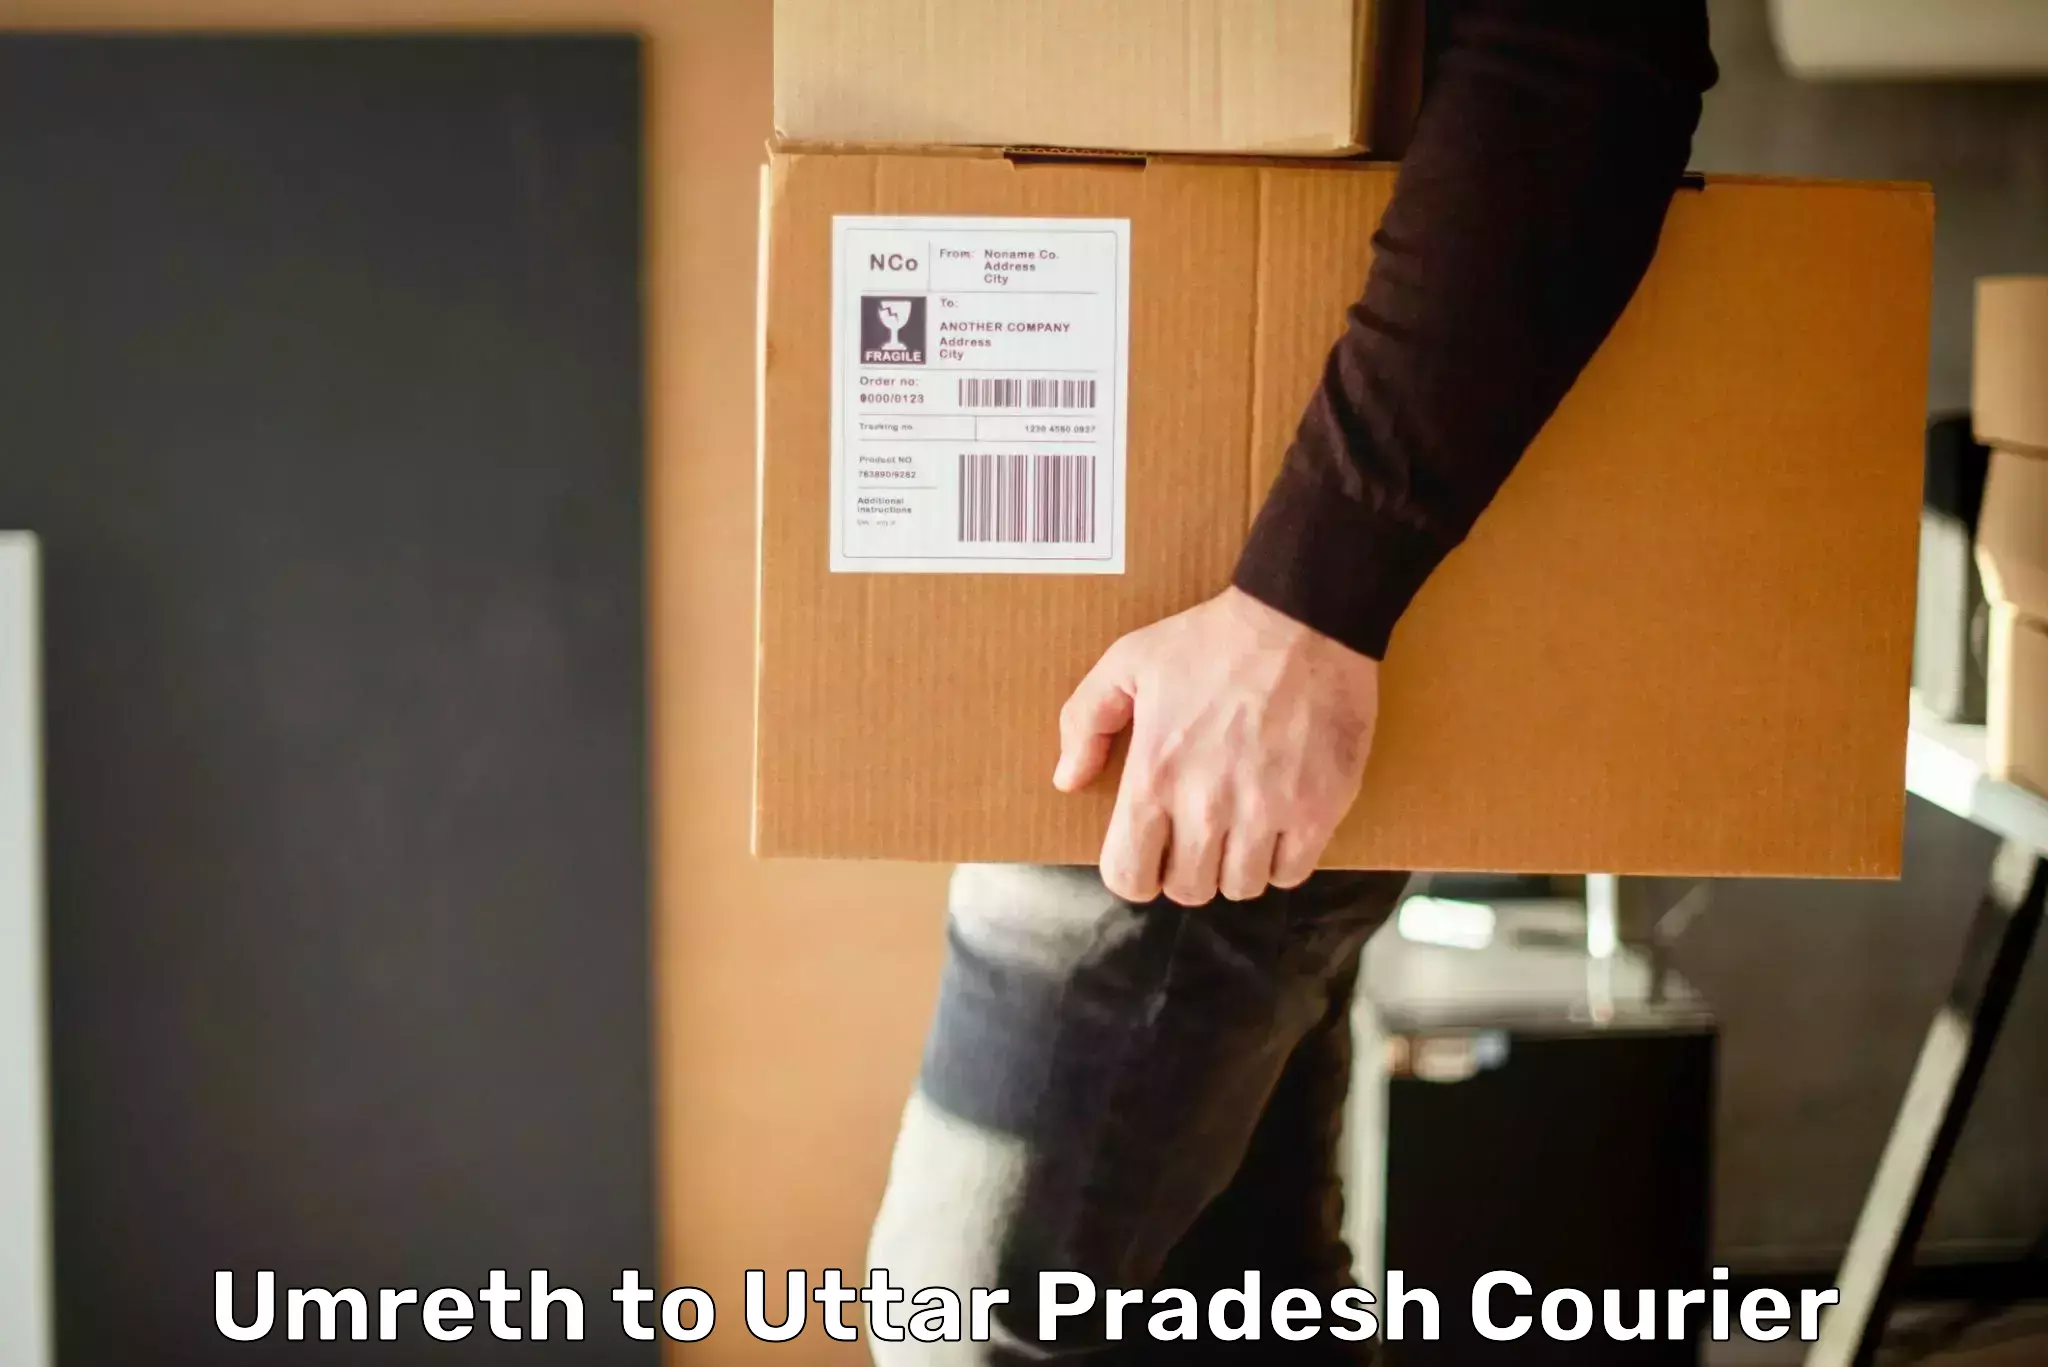 Shipping and handling Umreth to Malihabad